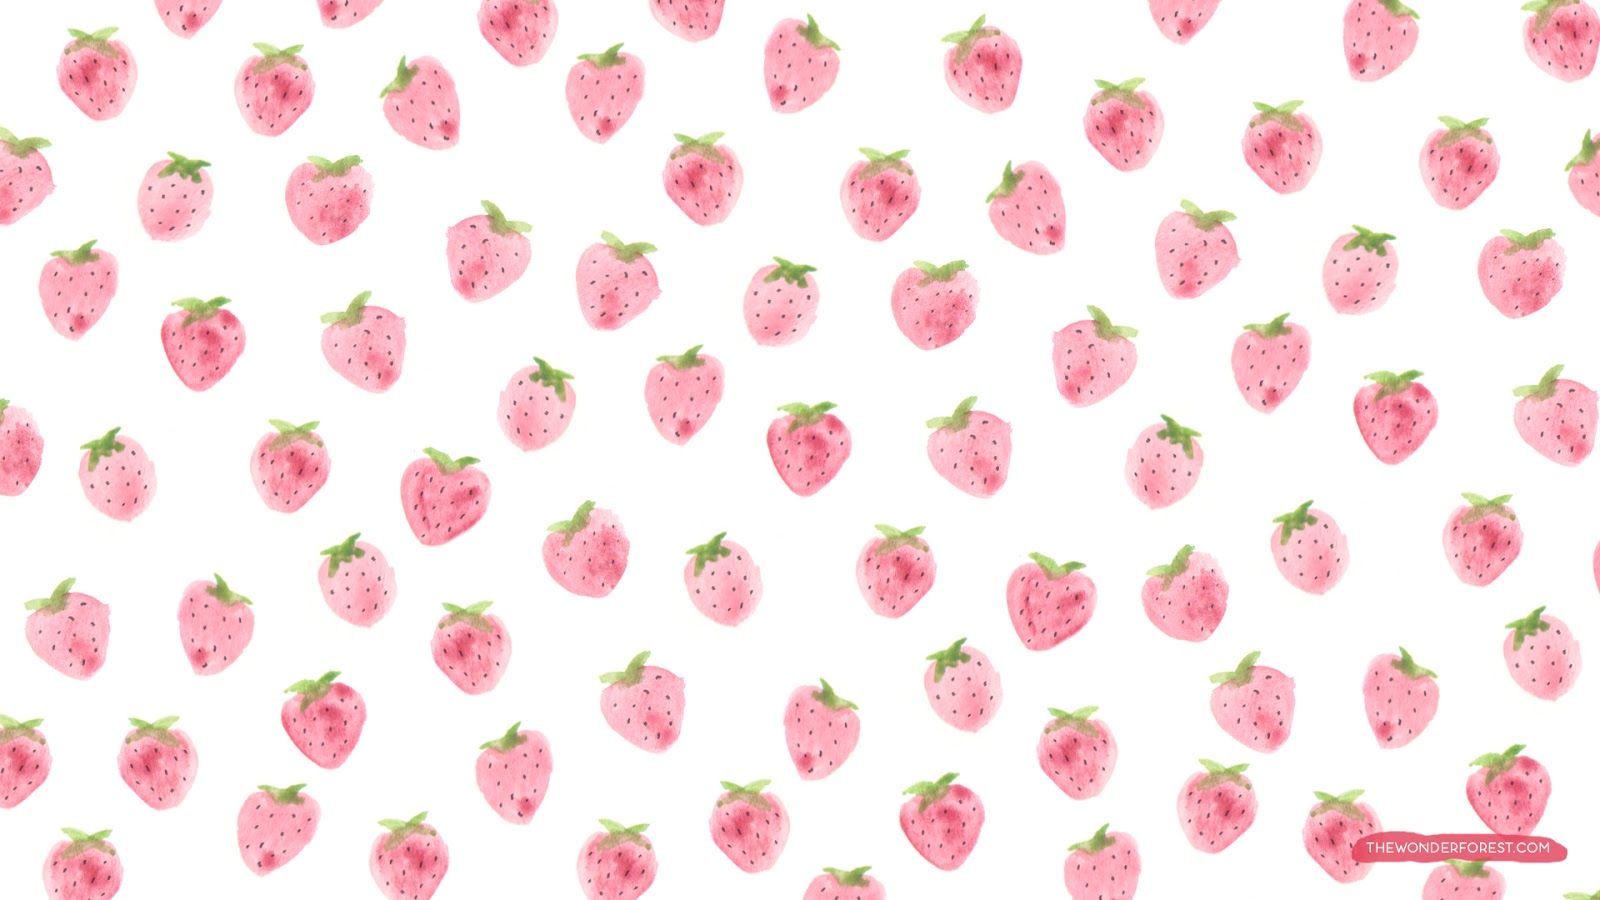 Strawberry Wallpaper. Strawberry Wallpaper, Strawberry Wallpaper Fruit and Kawaii Strawberry Wallpaper